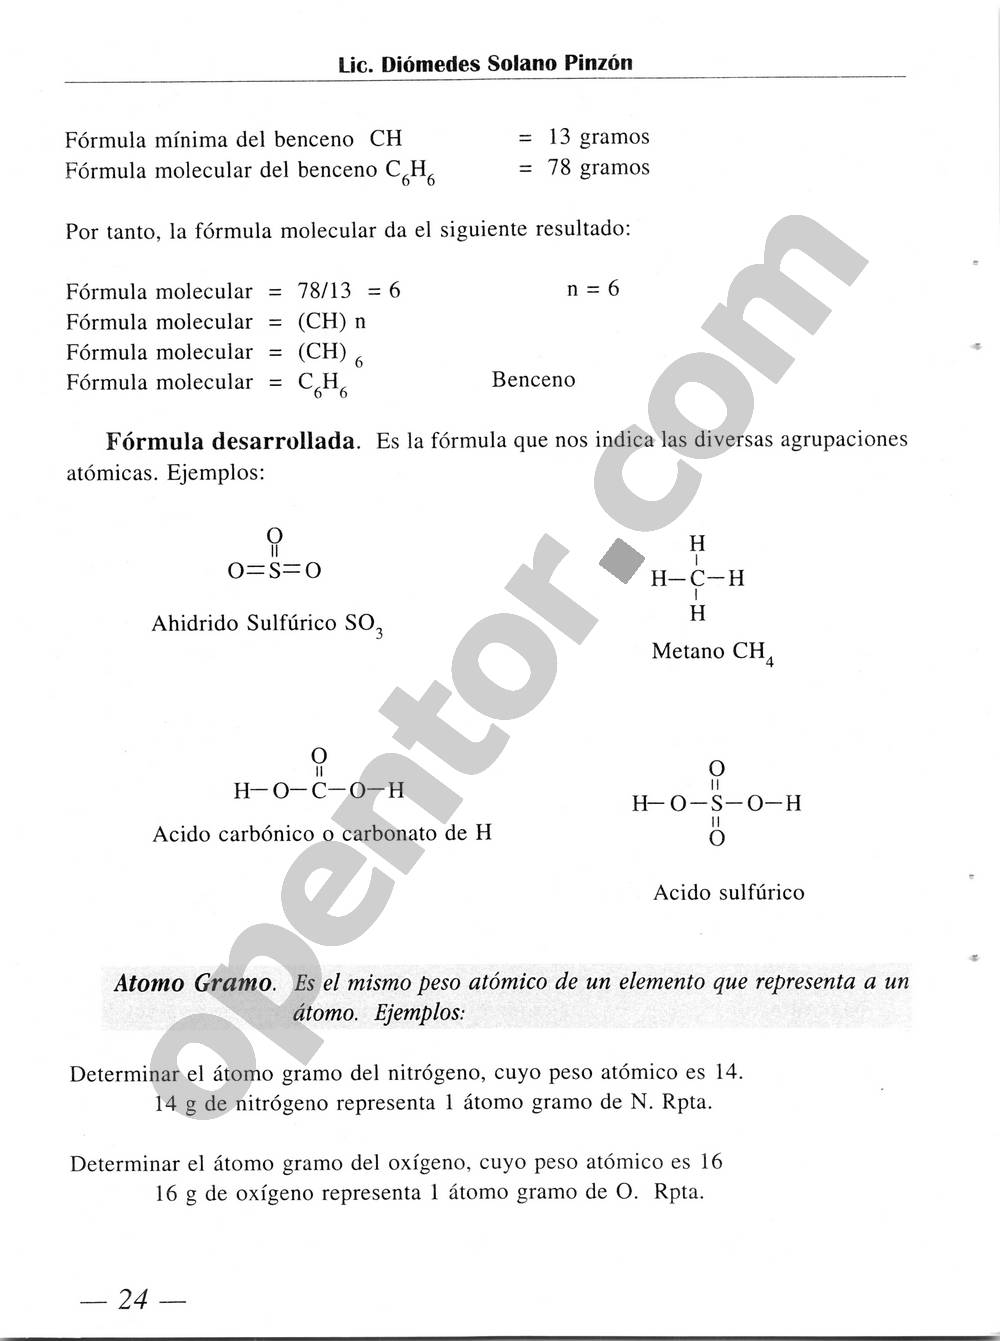 Química Simplificada de Diómedes Solano - Página 24